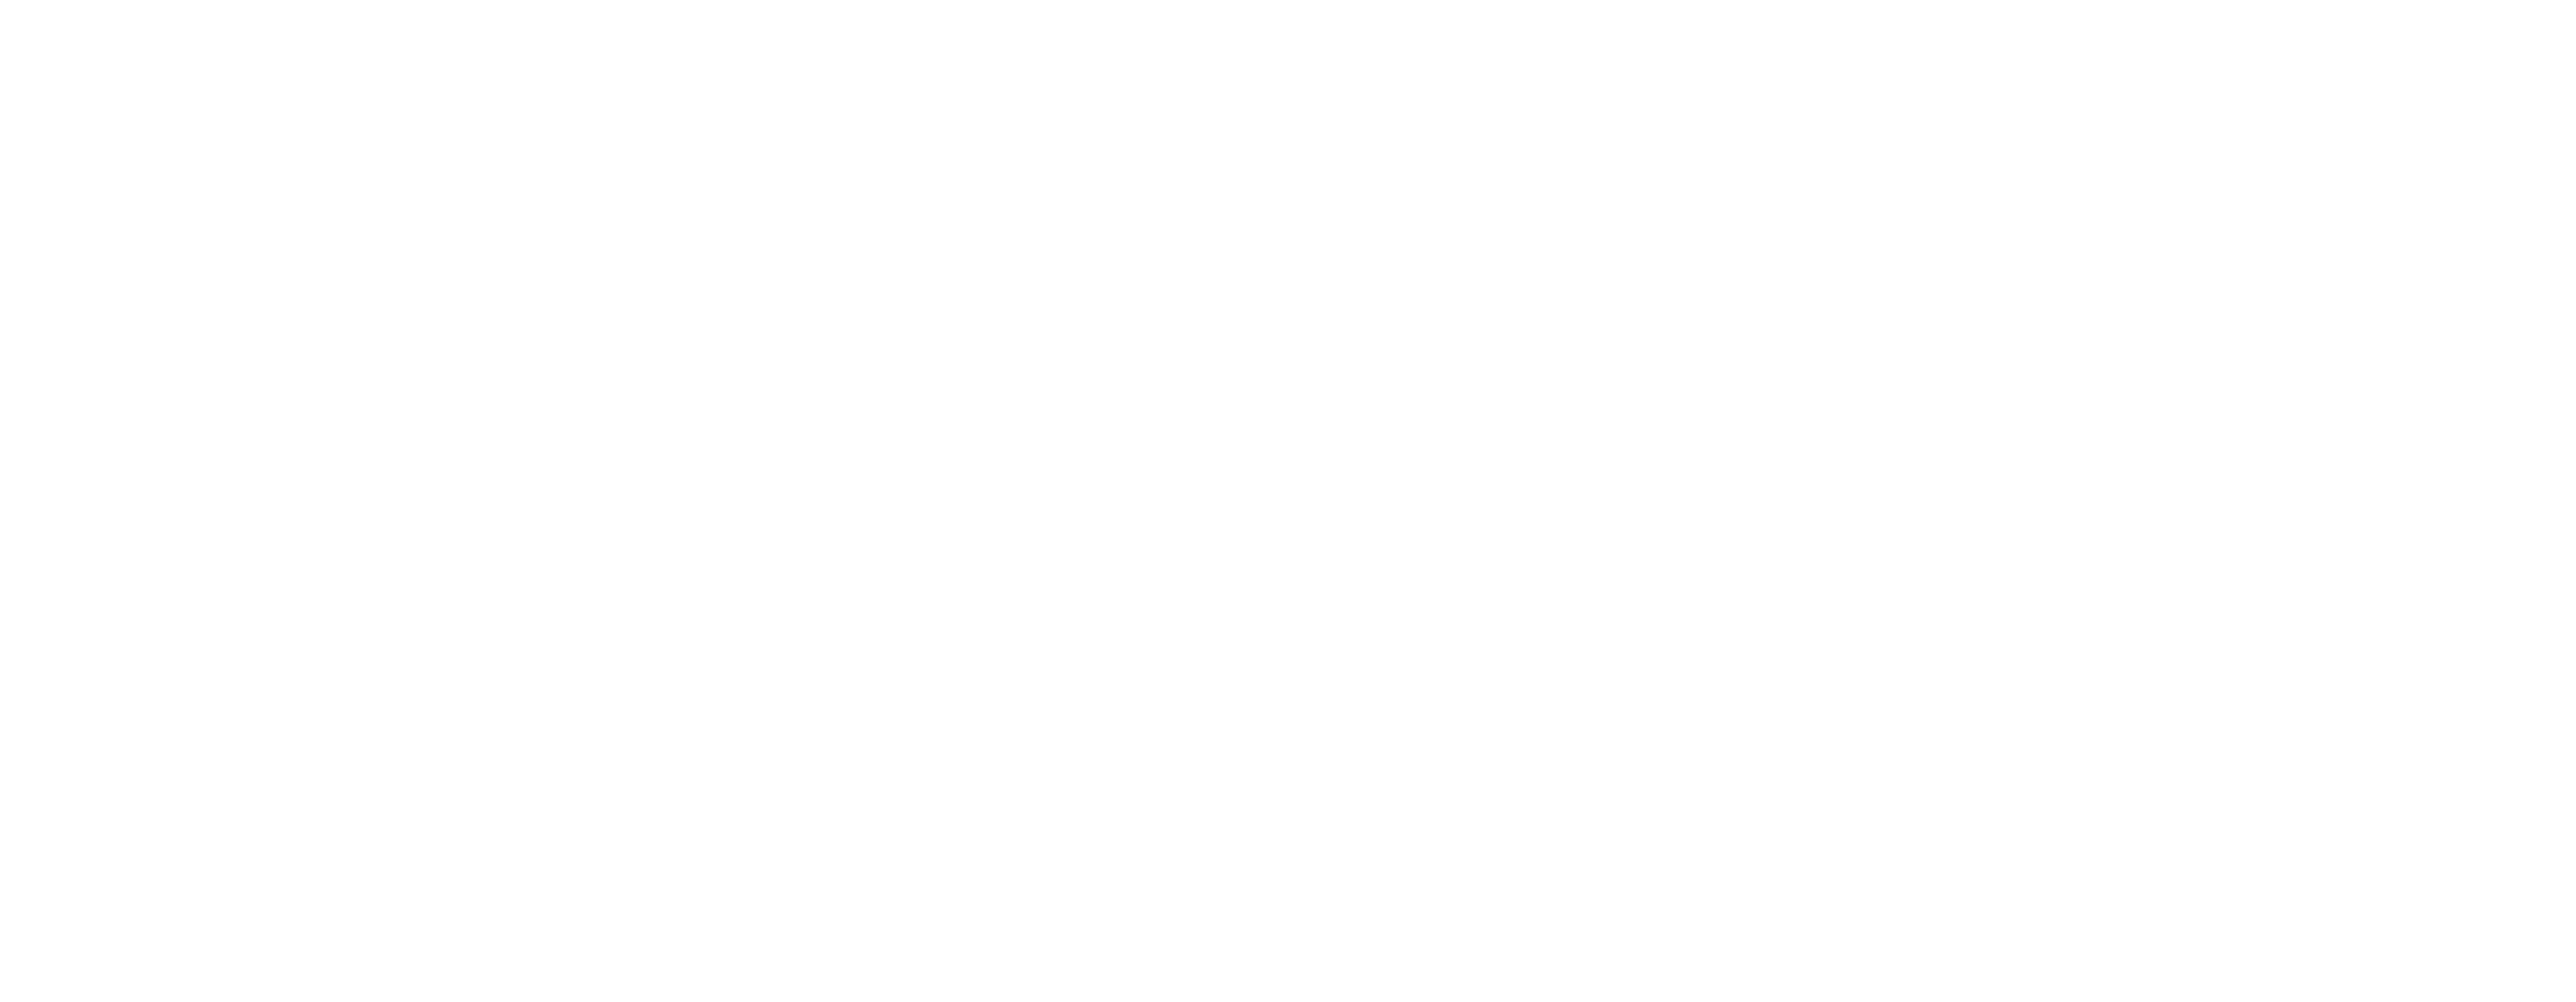 Pentecostal Publishing House logo